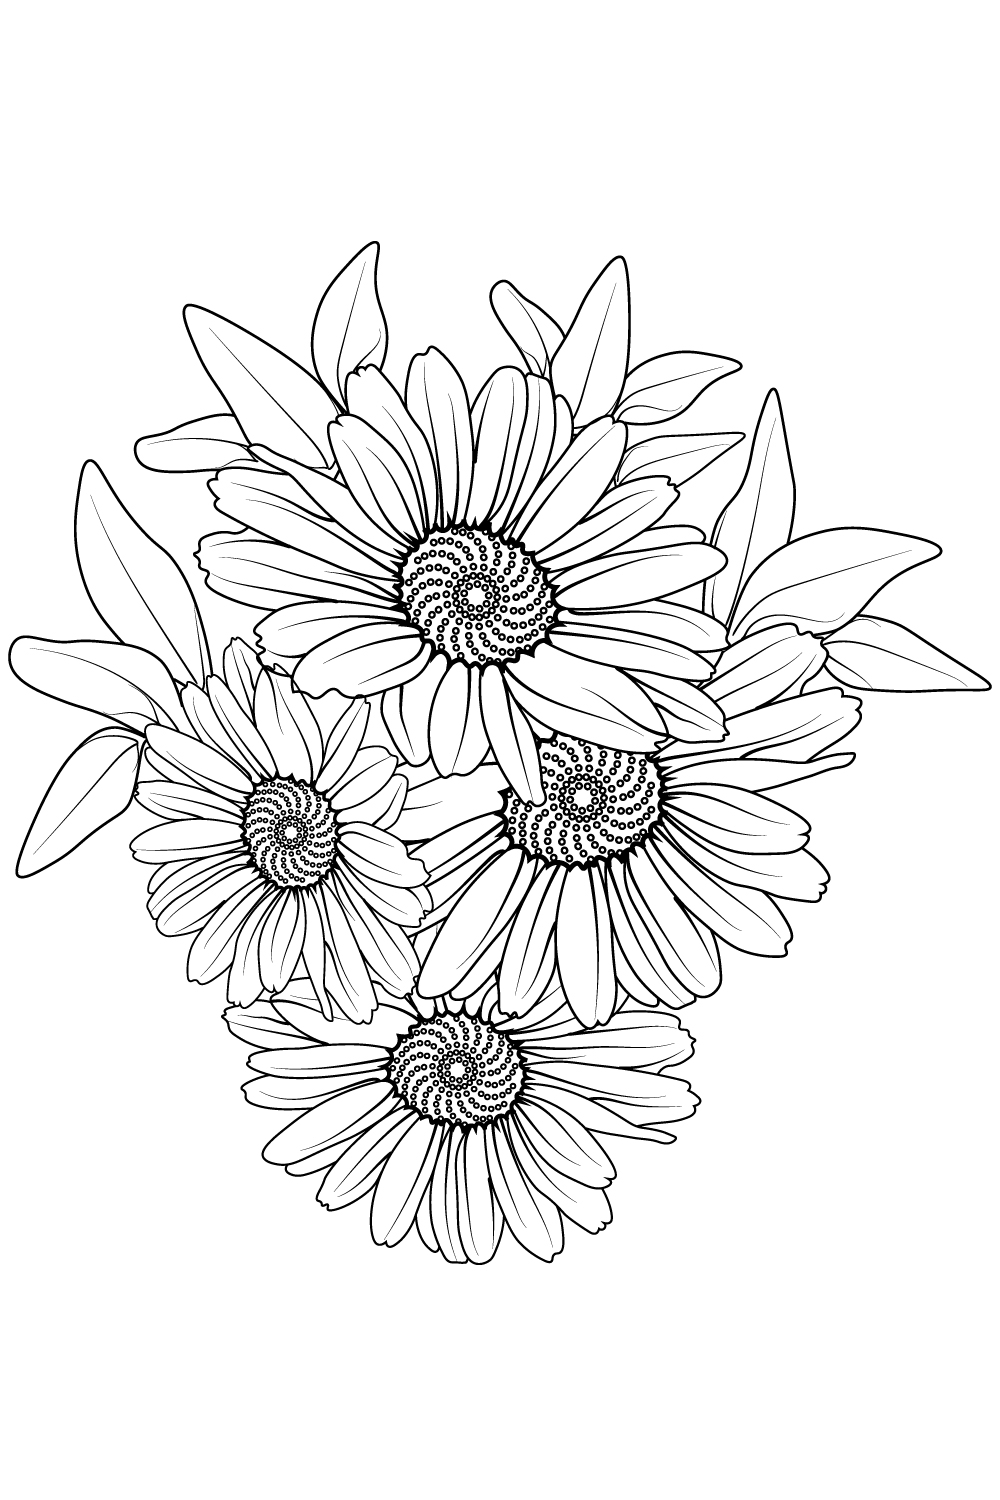 Daisy flwoer line art, daisy floewr line art bouquet, gerbara daisy drawing pinterest preview image.